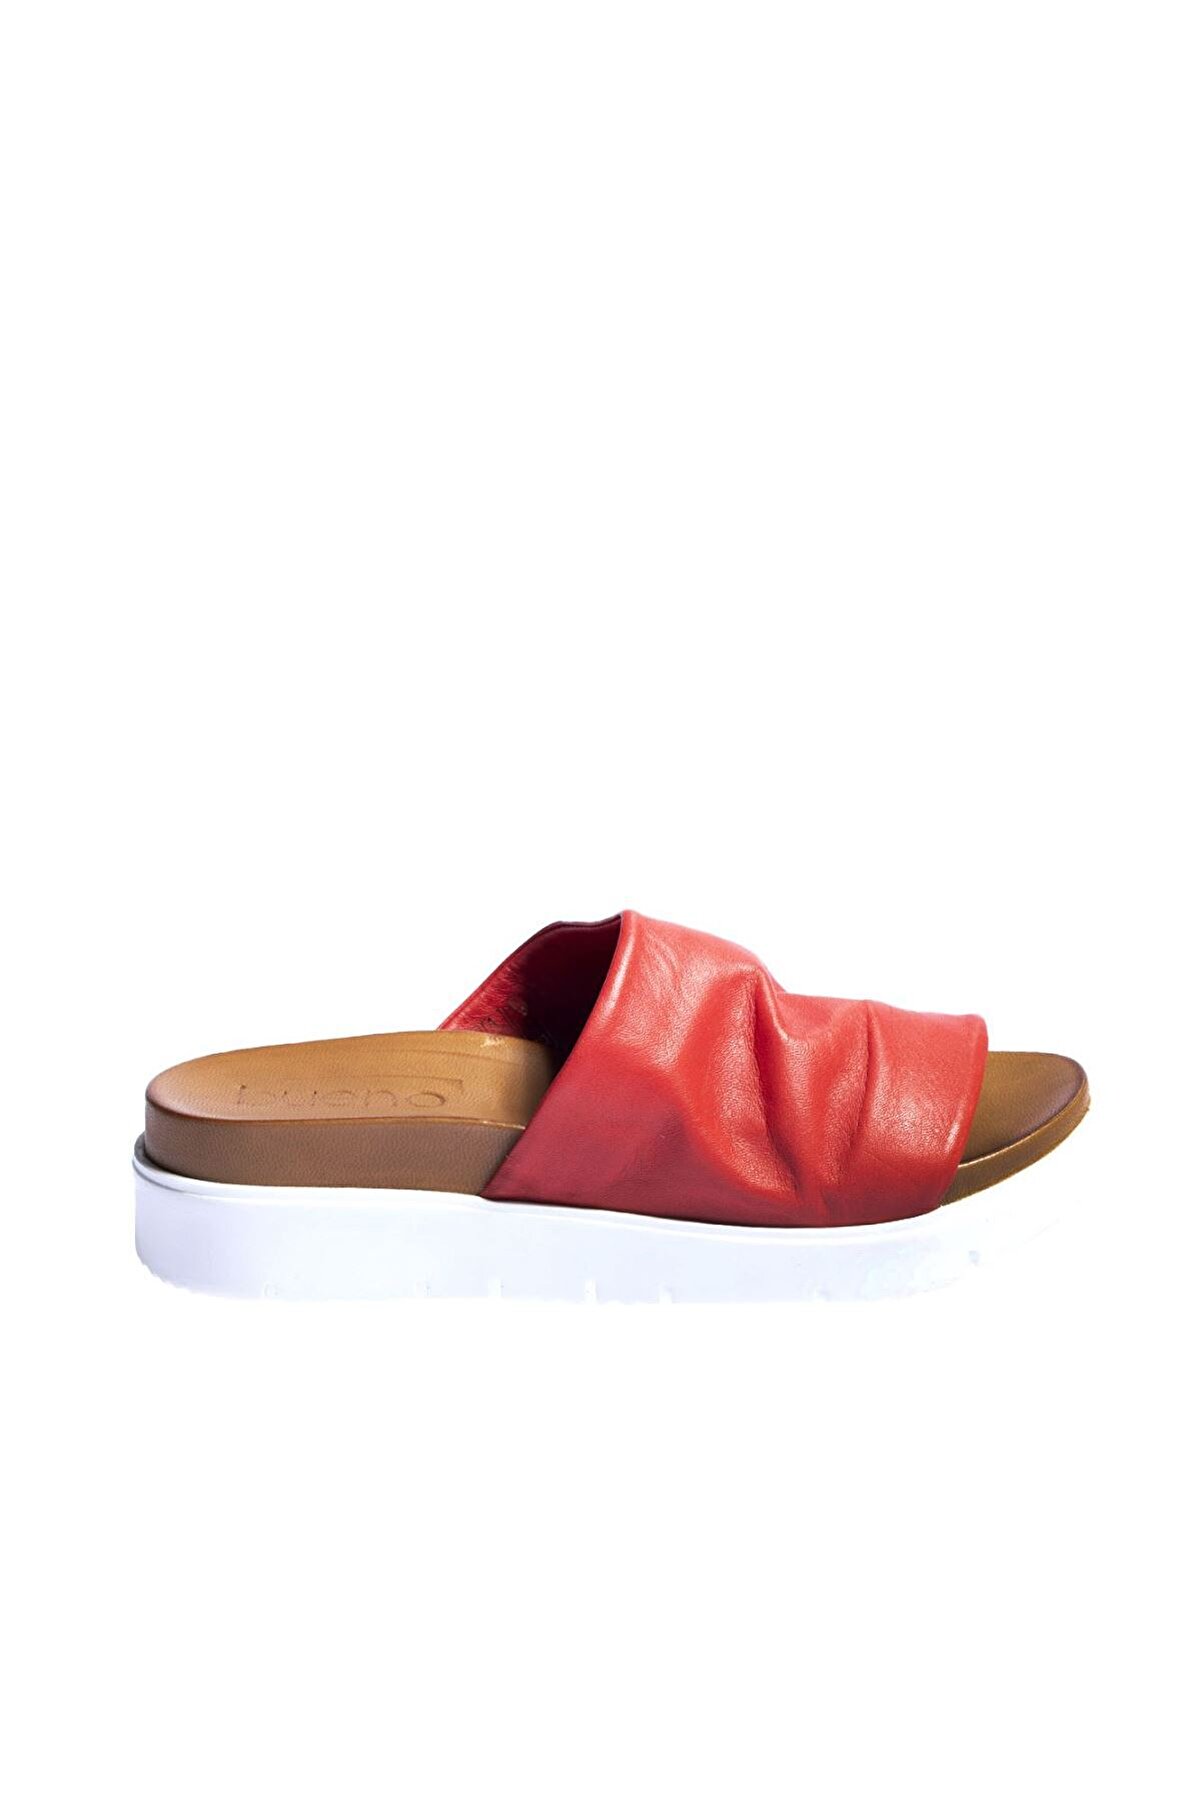 Genel Markalar Shoes Kırmızı Deri Kadın Dolgu Topuklu Terlik